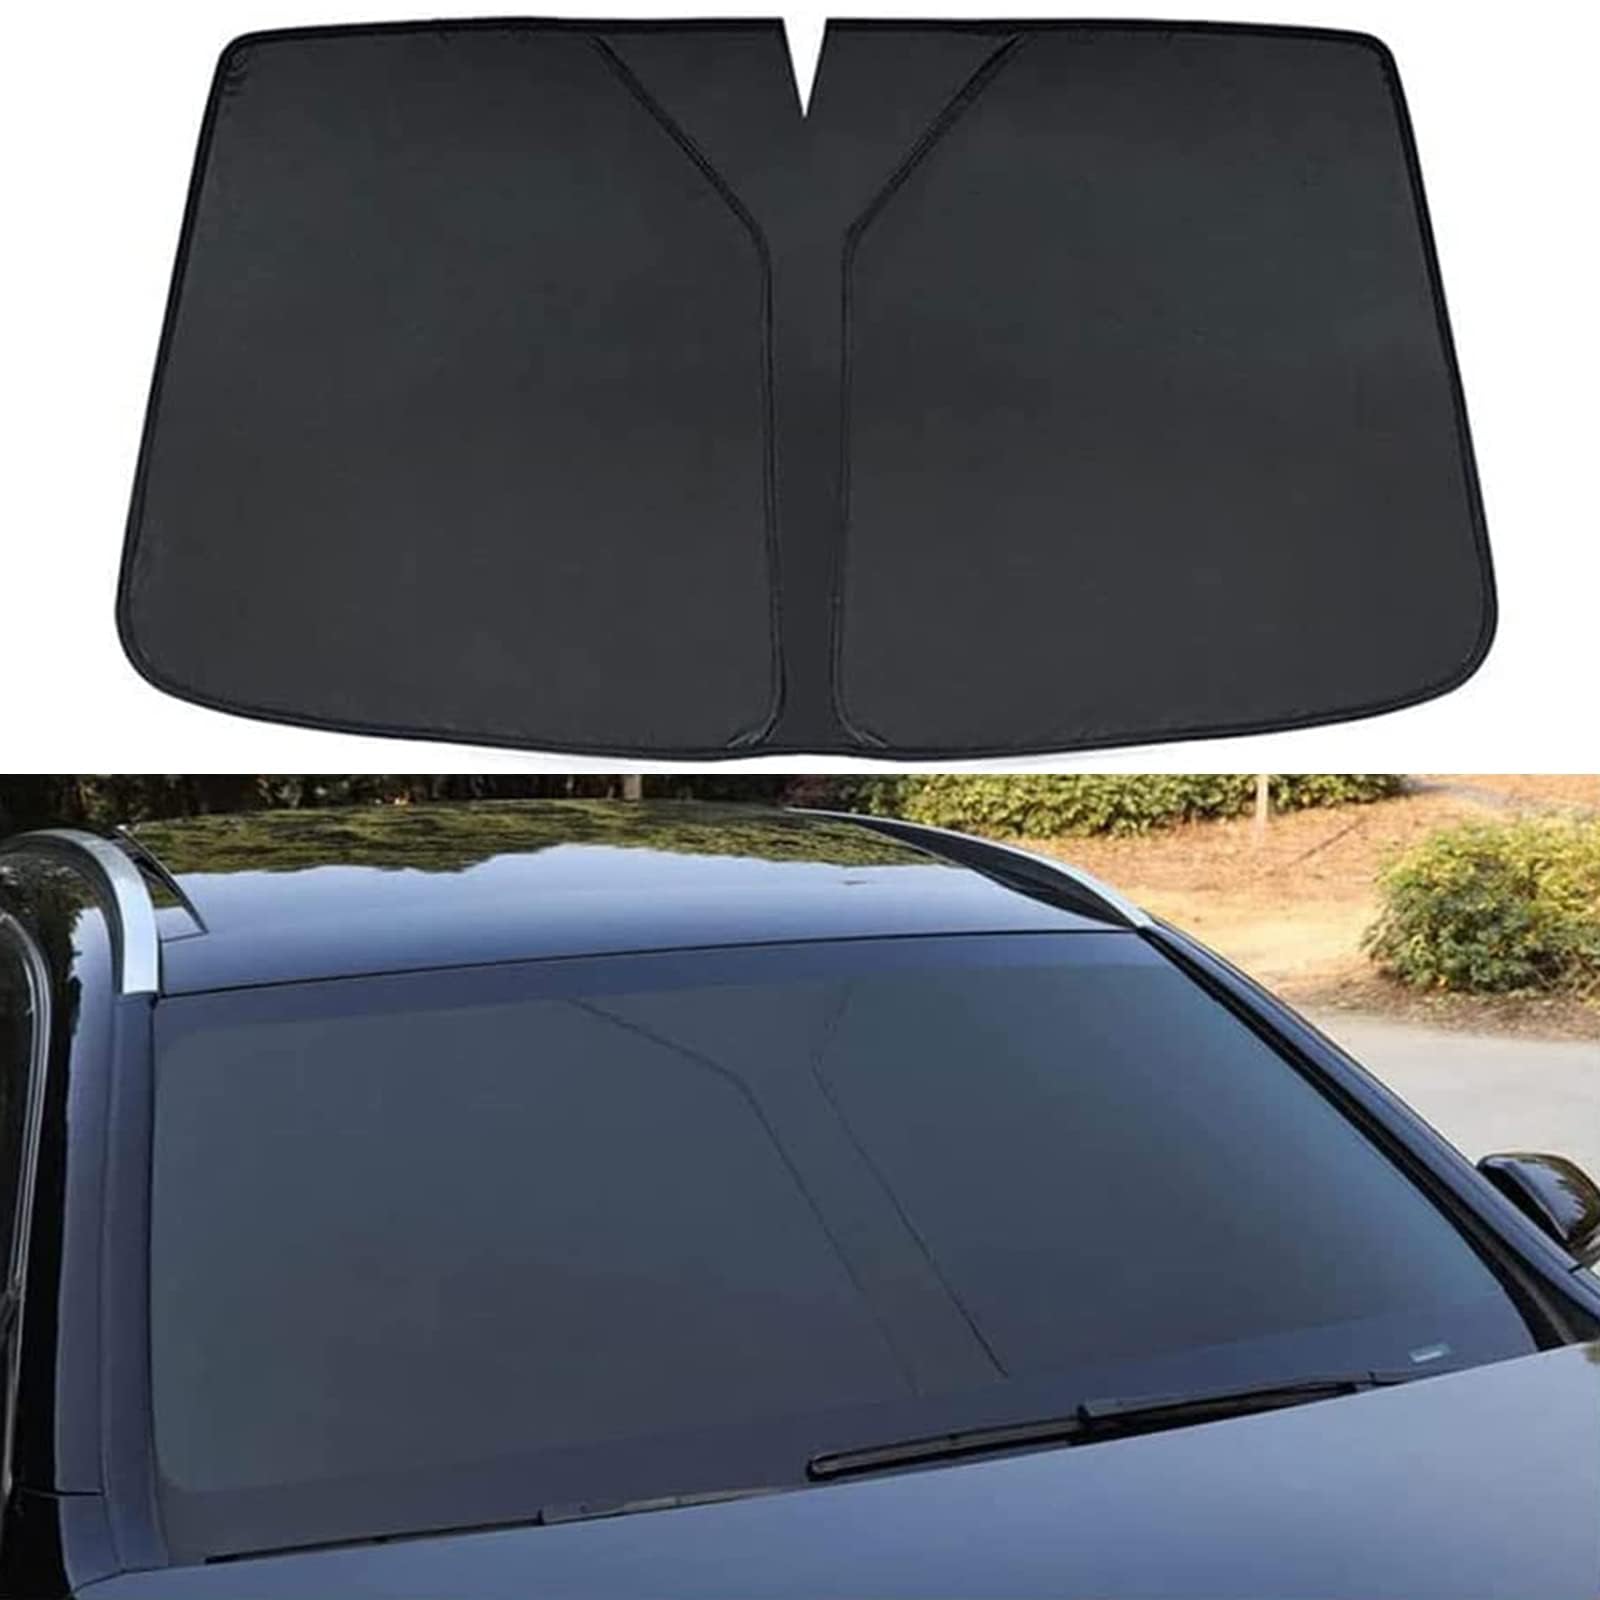 Auto Windschutzscheibe Sonnenschutz für Vw C-TREK,Verdunkelung Faltbar und Tragbar Wärmeisolierung Windschutzscheiben-Innenzubehör,Black von MUGONGWEI